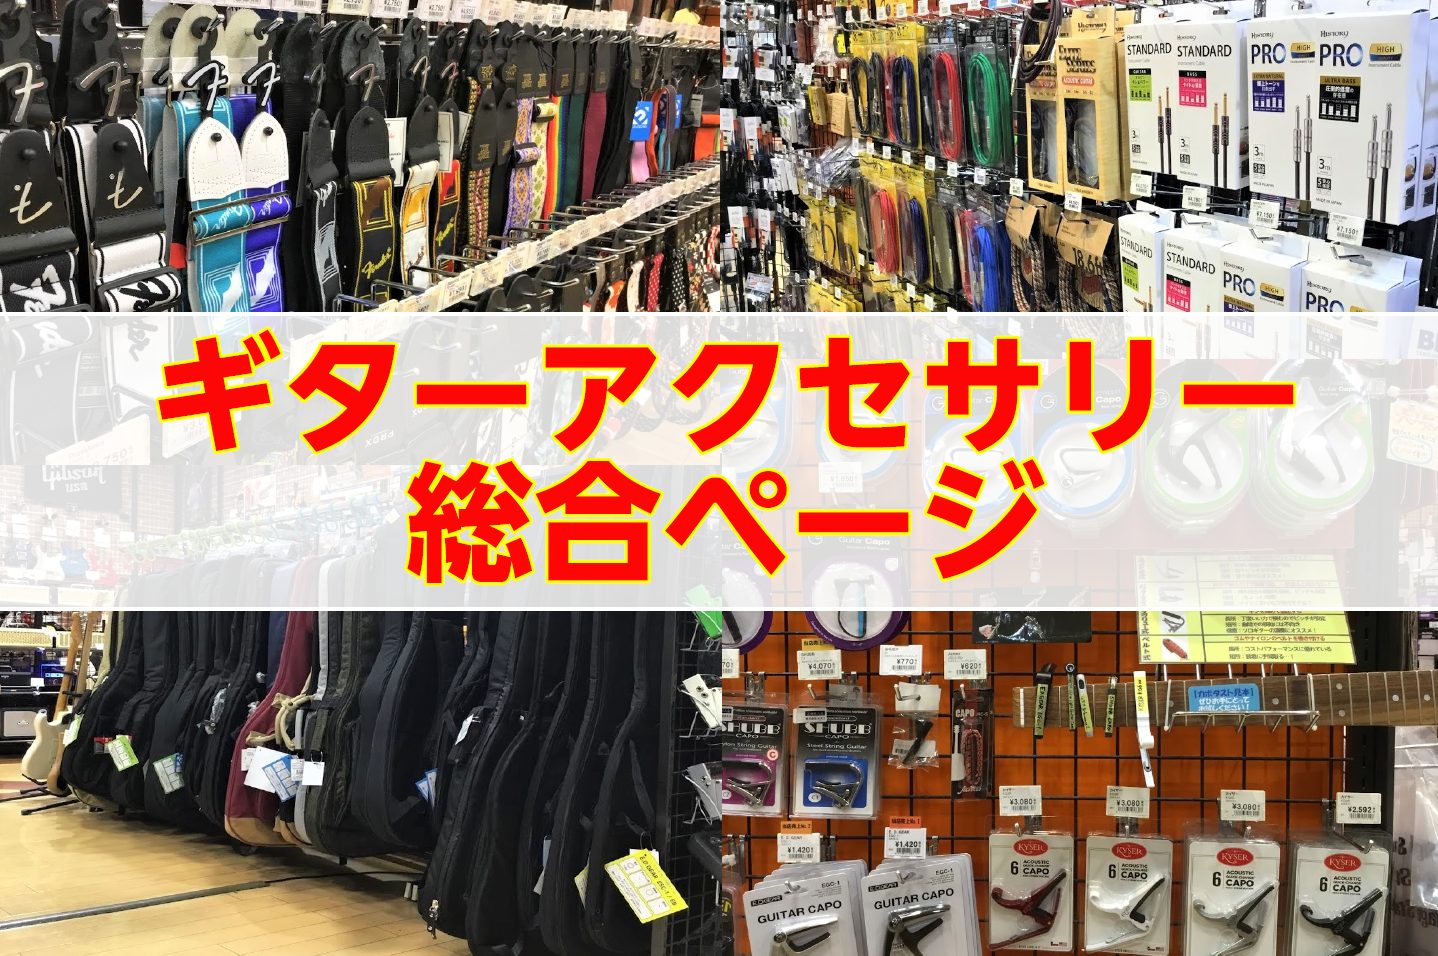 いつもご来店いただき誠にありがとうございます！ こちらでは、島村楽器札幌平岡店のギターアクセサリーコーナーをご案内しております！ 当店のギターアクセサリーコーナー。品揃えは平凡…かも知れませんが、そんな中で来て頂いたお客様に少しでも楽しんでいただけるようなものを多数ご用意しておりますので、ぜひお近く […]